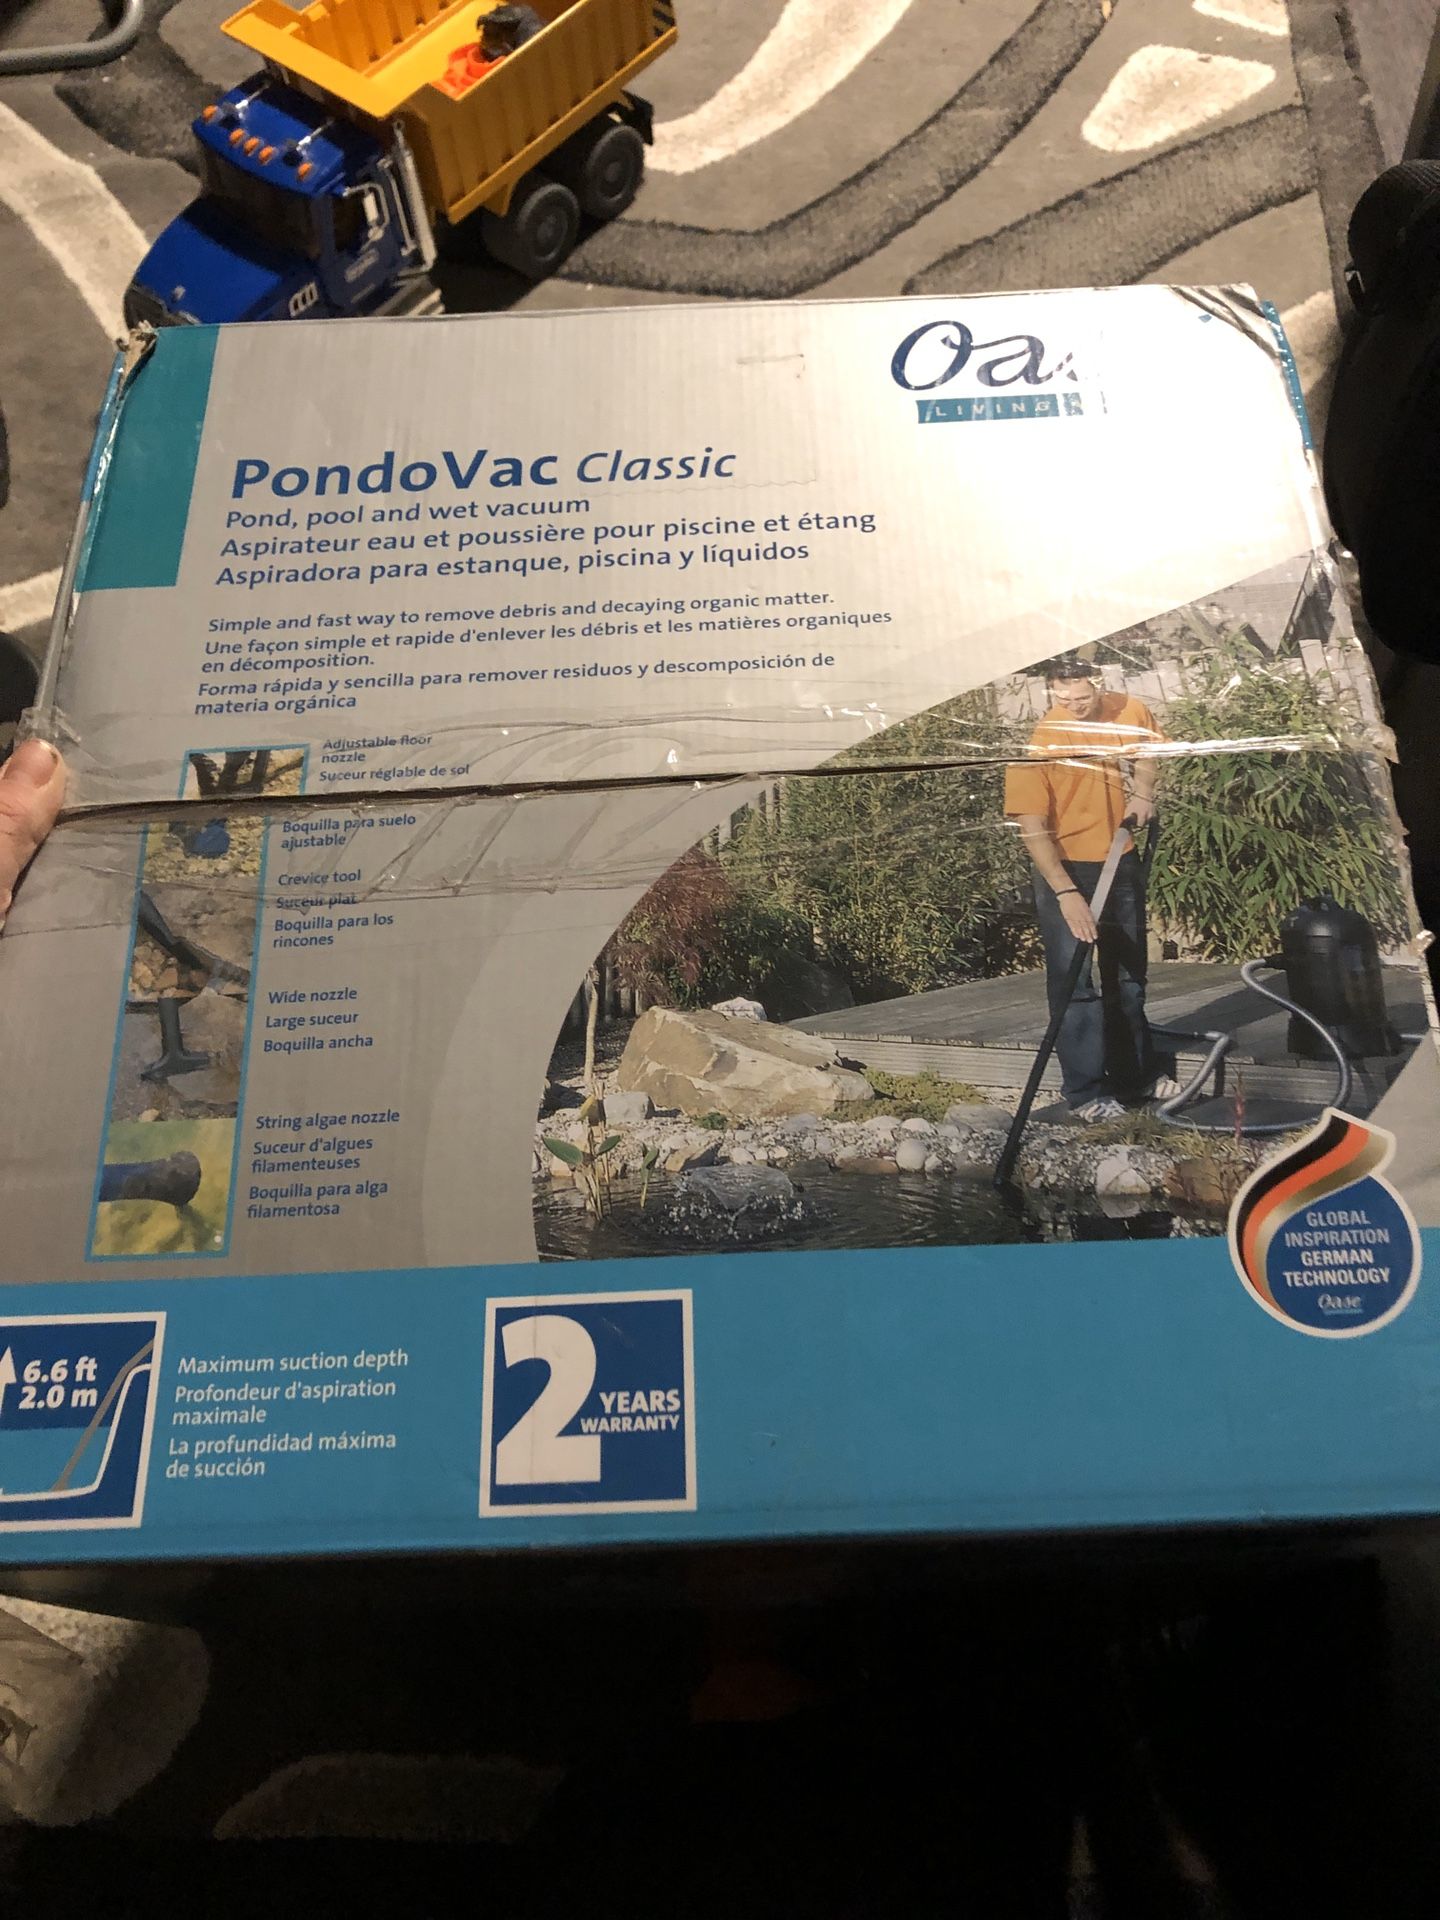 Pondovac Classic Pond Vacuum Cleaner